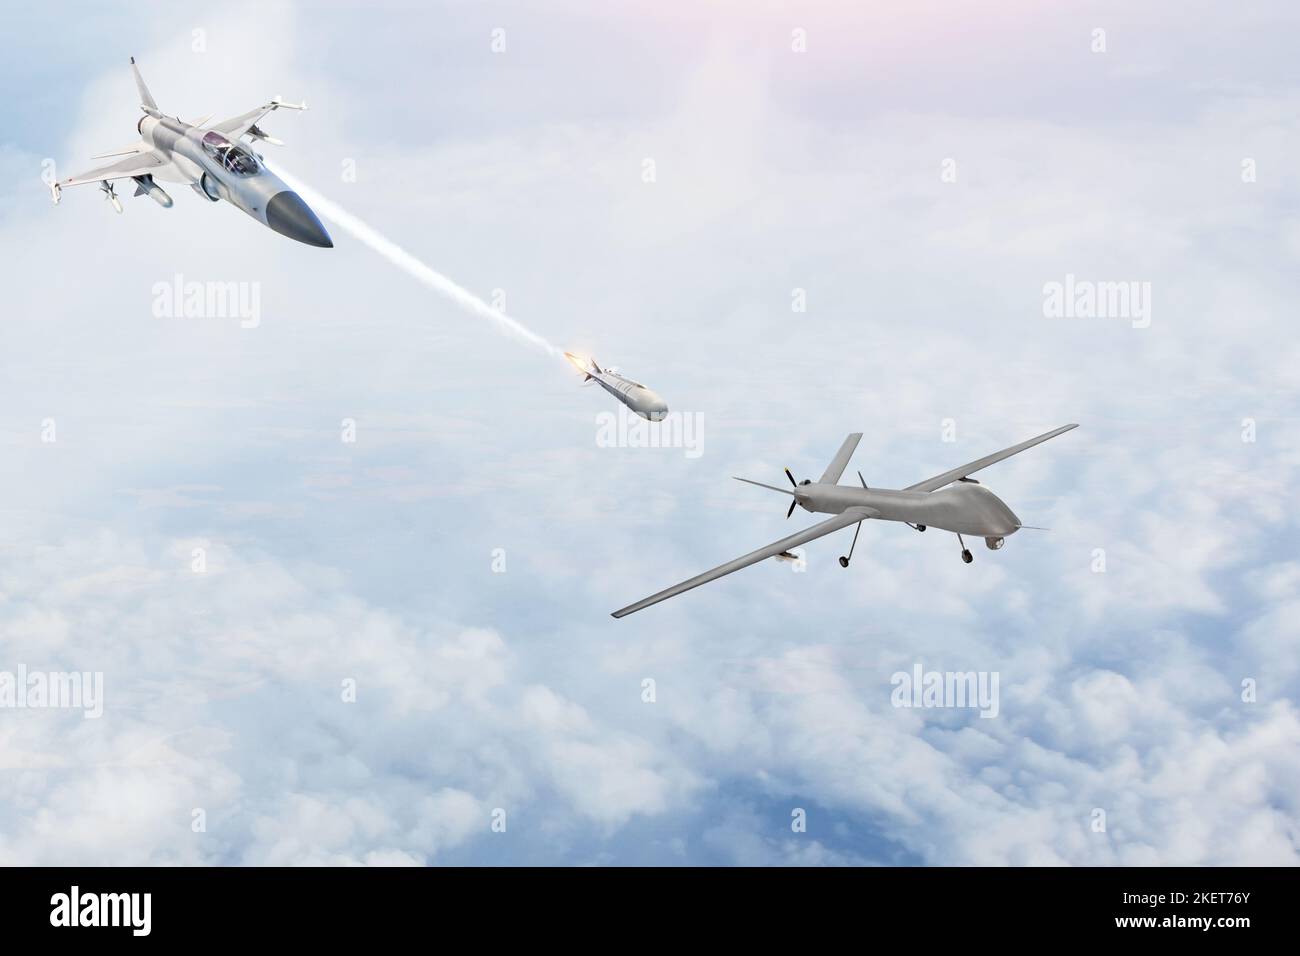 Un chasseur de combat lance des missiles sur une cible - un drone militaire sans pilote uav. Conflit, guerre. Forces aérospatiales Banque D'Images